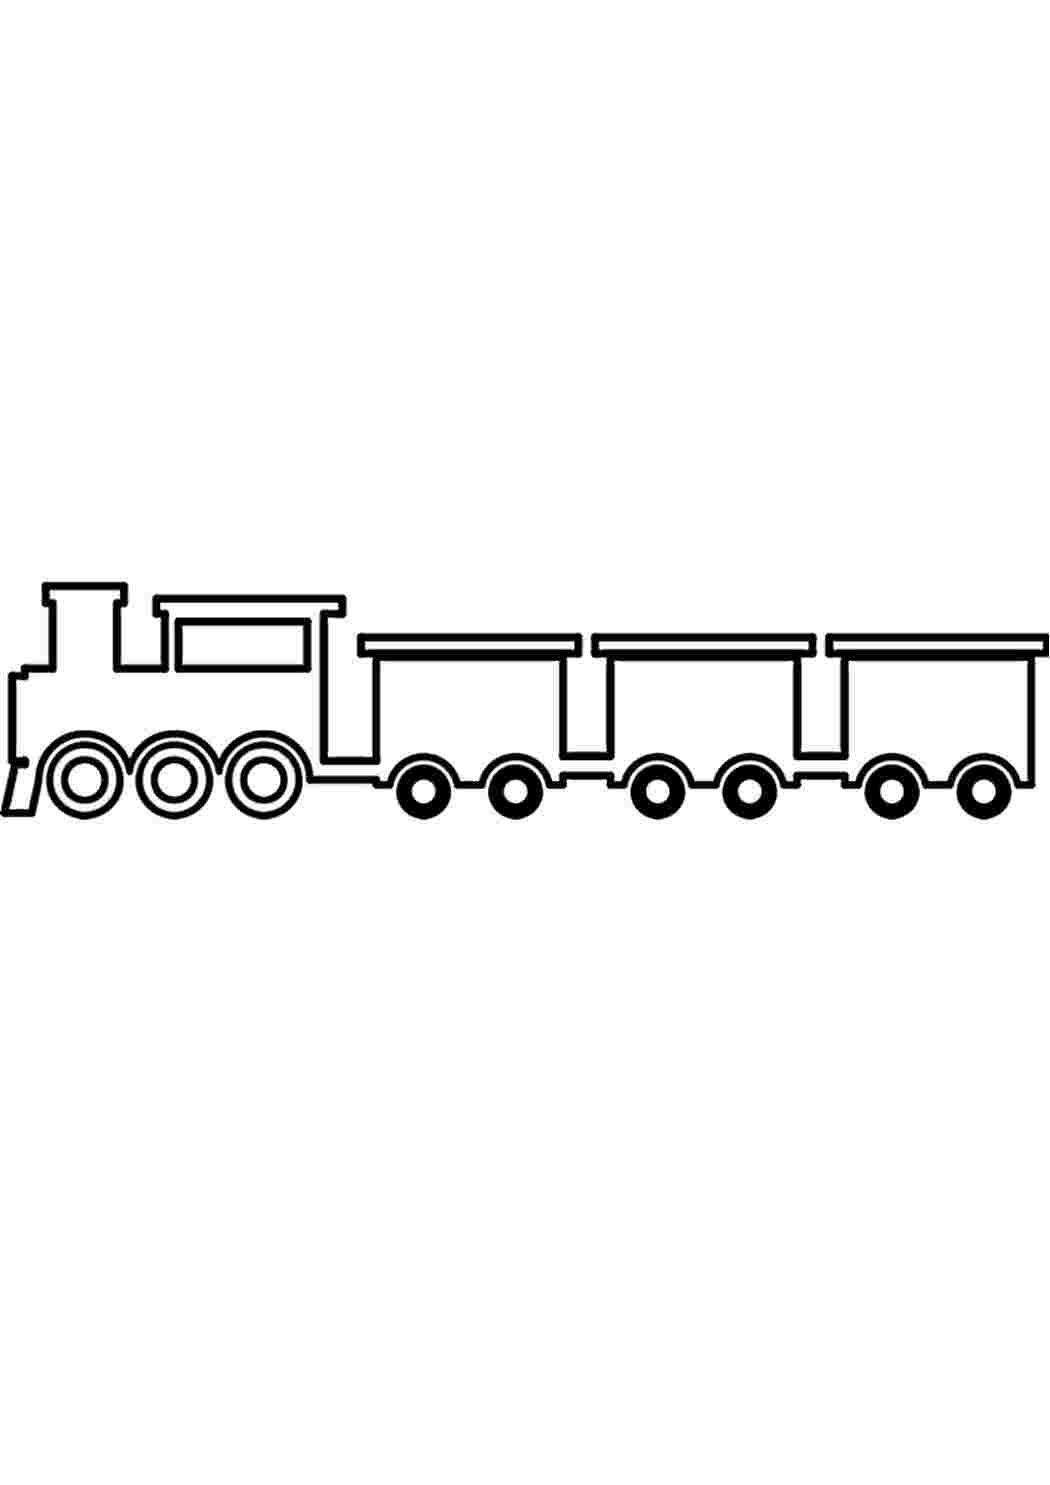 Раскраска поезда с вагонами, паровозов, локомотивов.